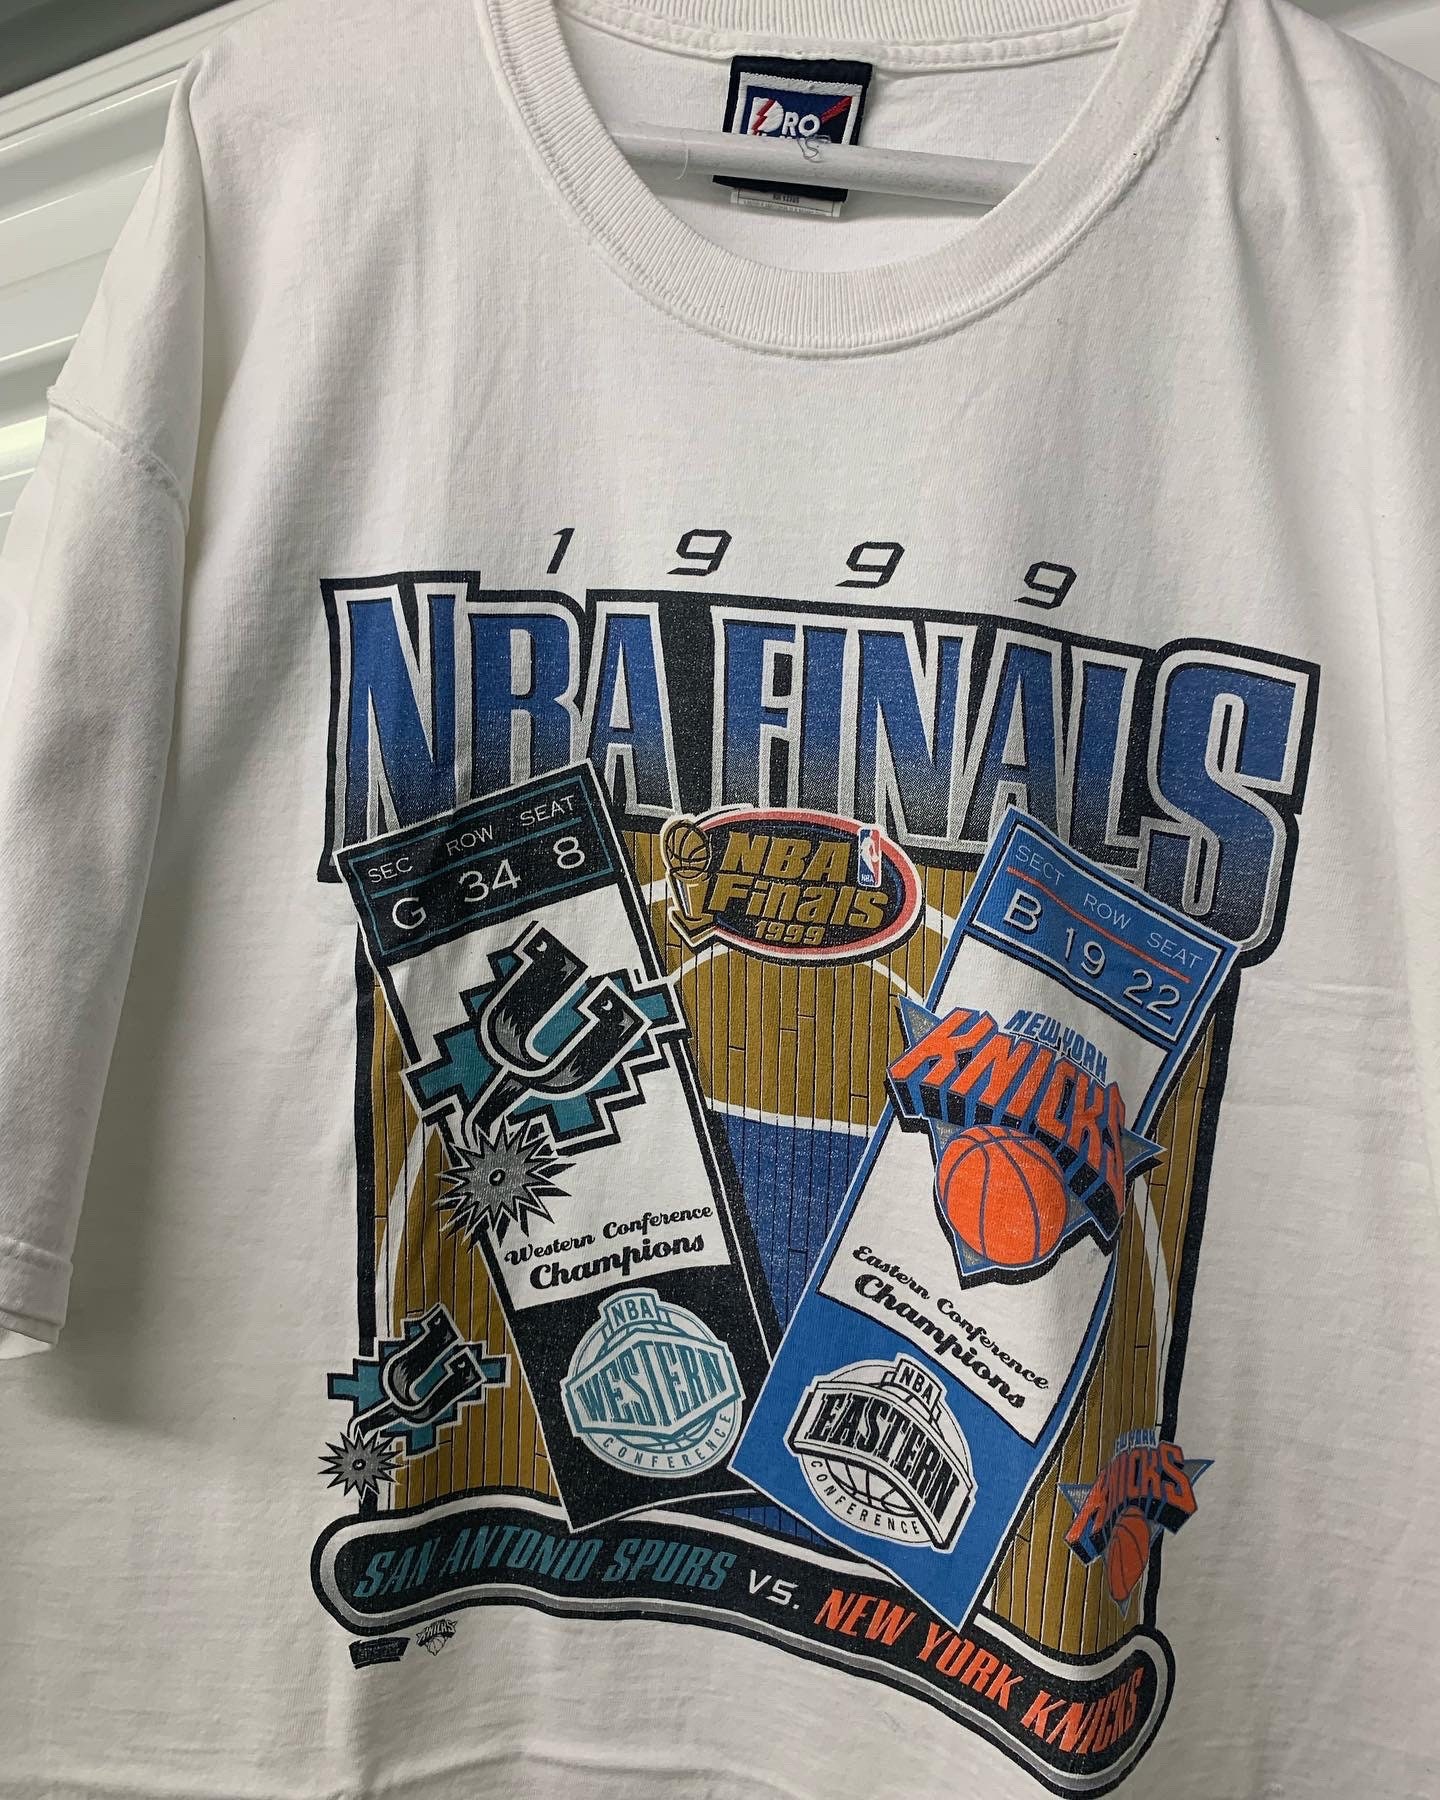 Vintage San Antonio Spurs Basketball Fan Sweatshirt Unisex Tee